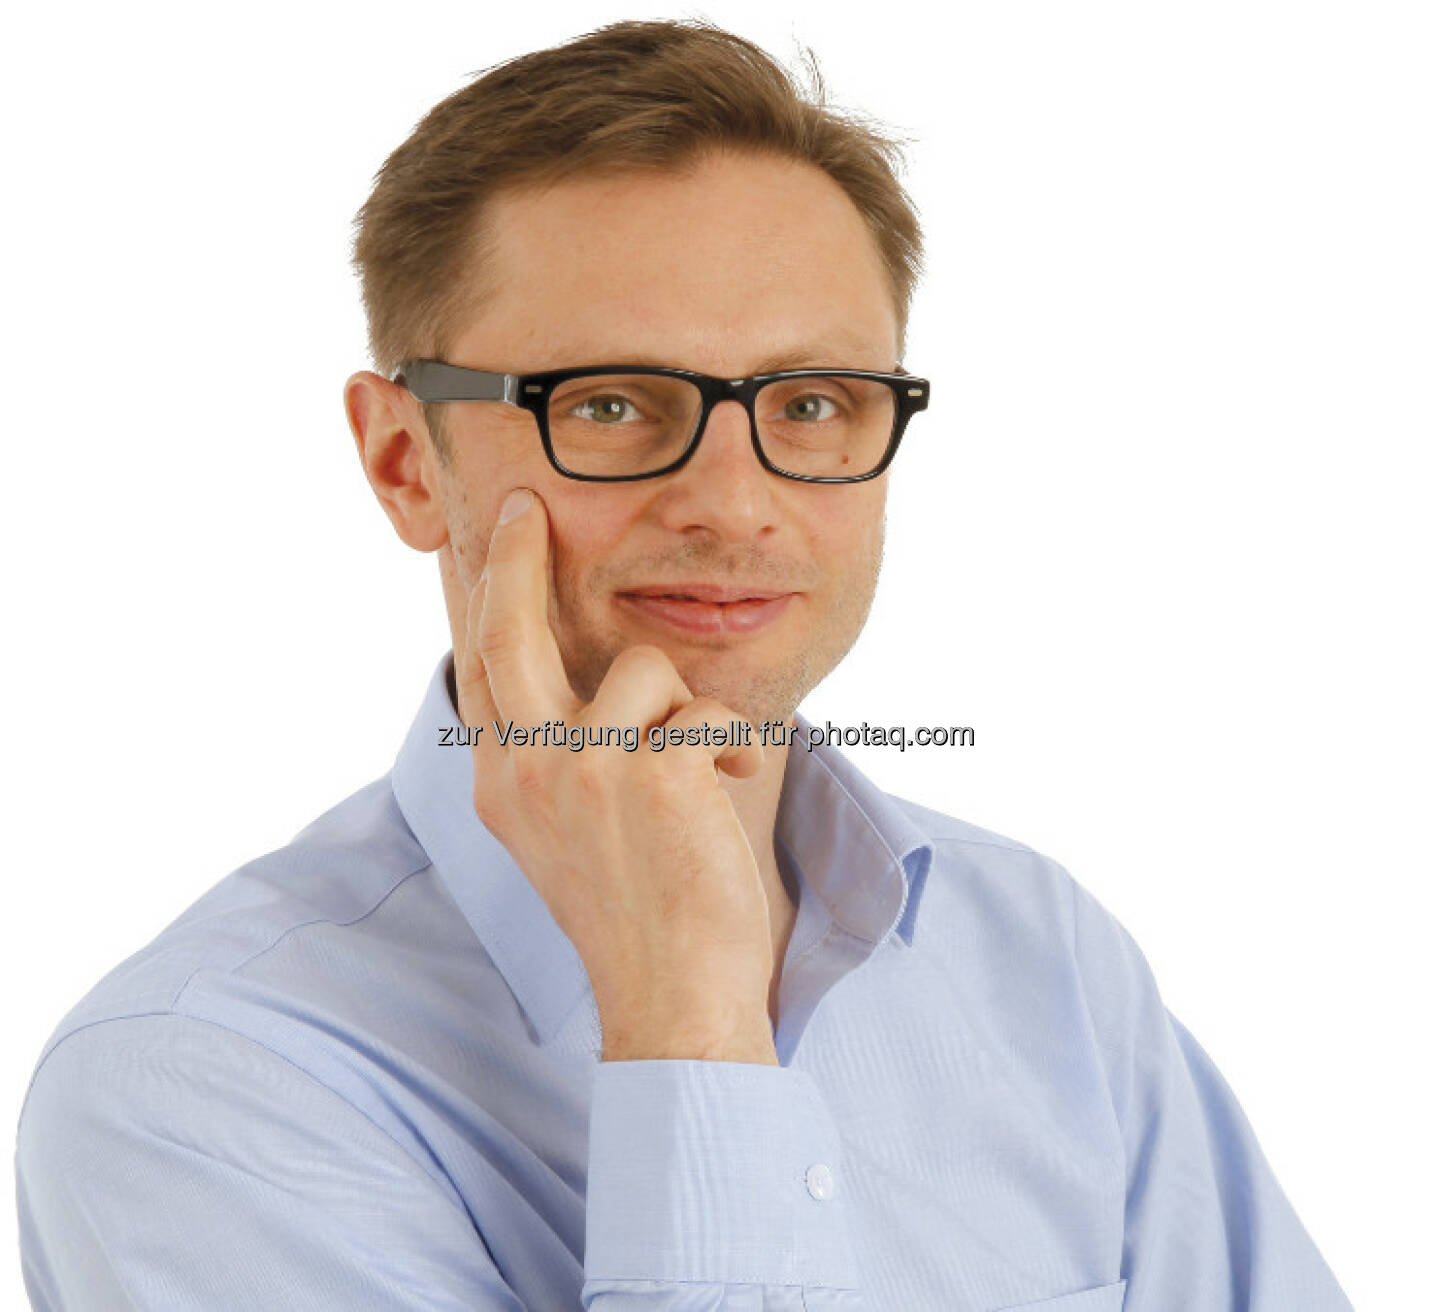 Andreas Kern, GF und Gründer von wikifolio.com, hat die Marke von 10 Mio. Euro „Assets under Management“, also in wikifolios investiertes Kapital, überschritten